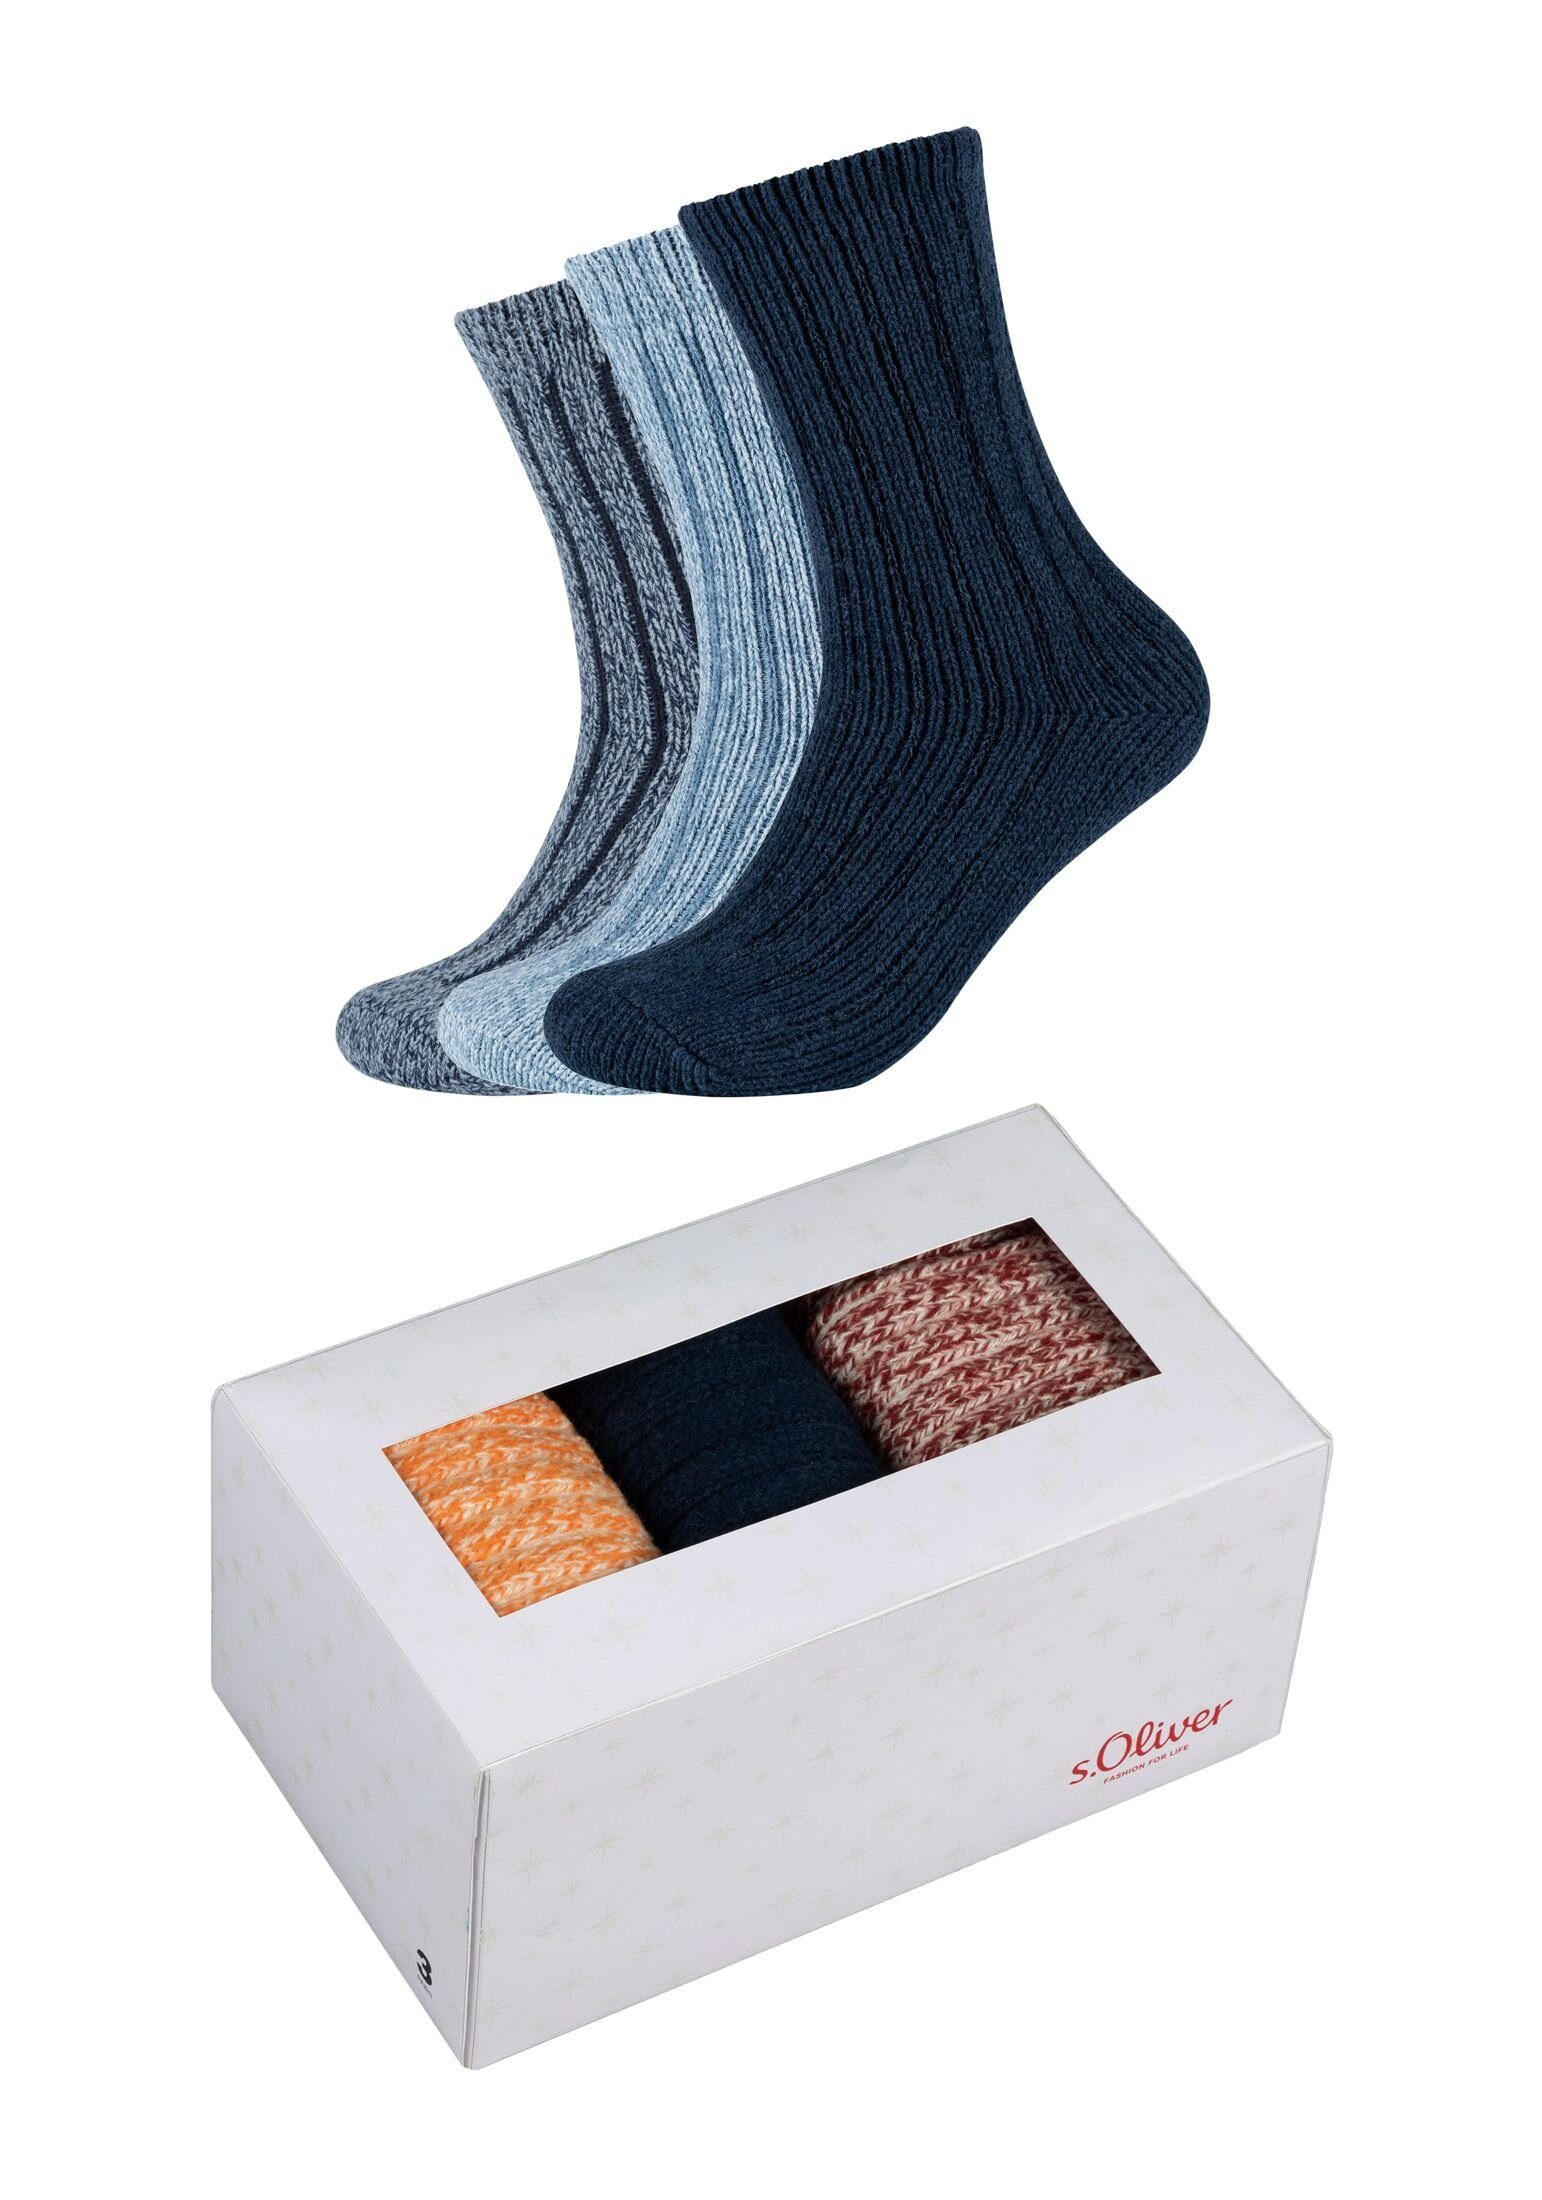 Sockenbox 3er Pack s.Oliver blue dark Socken